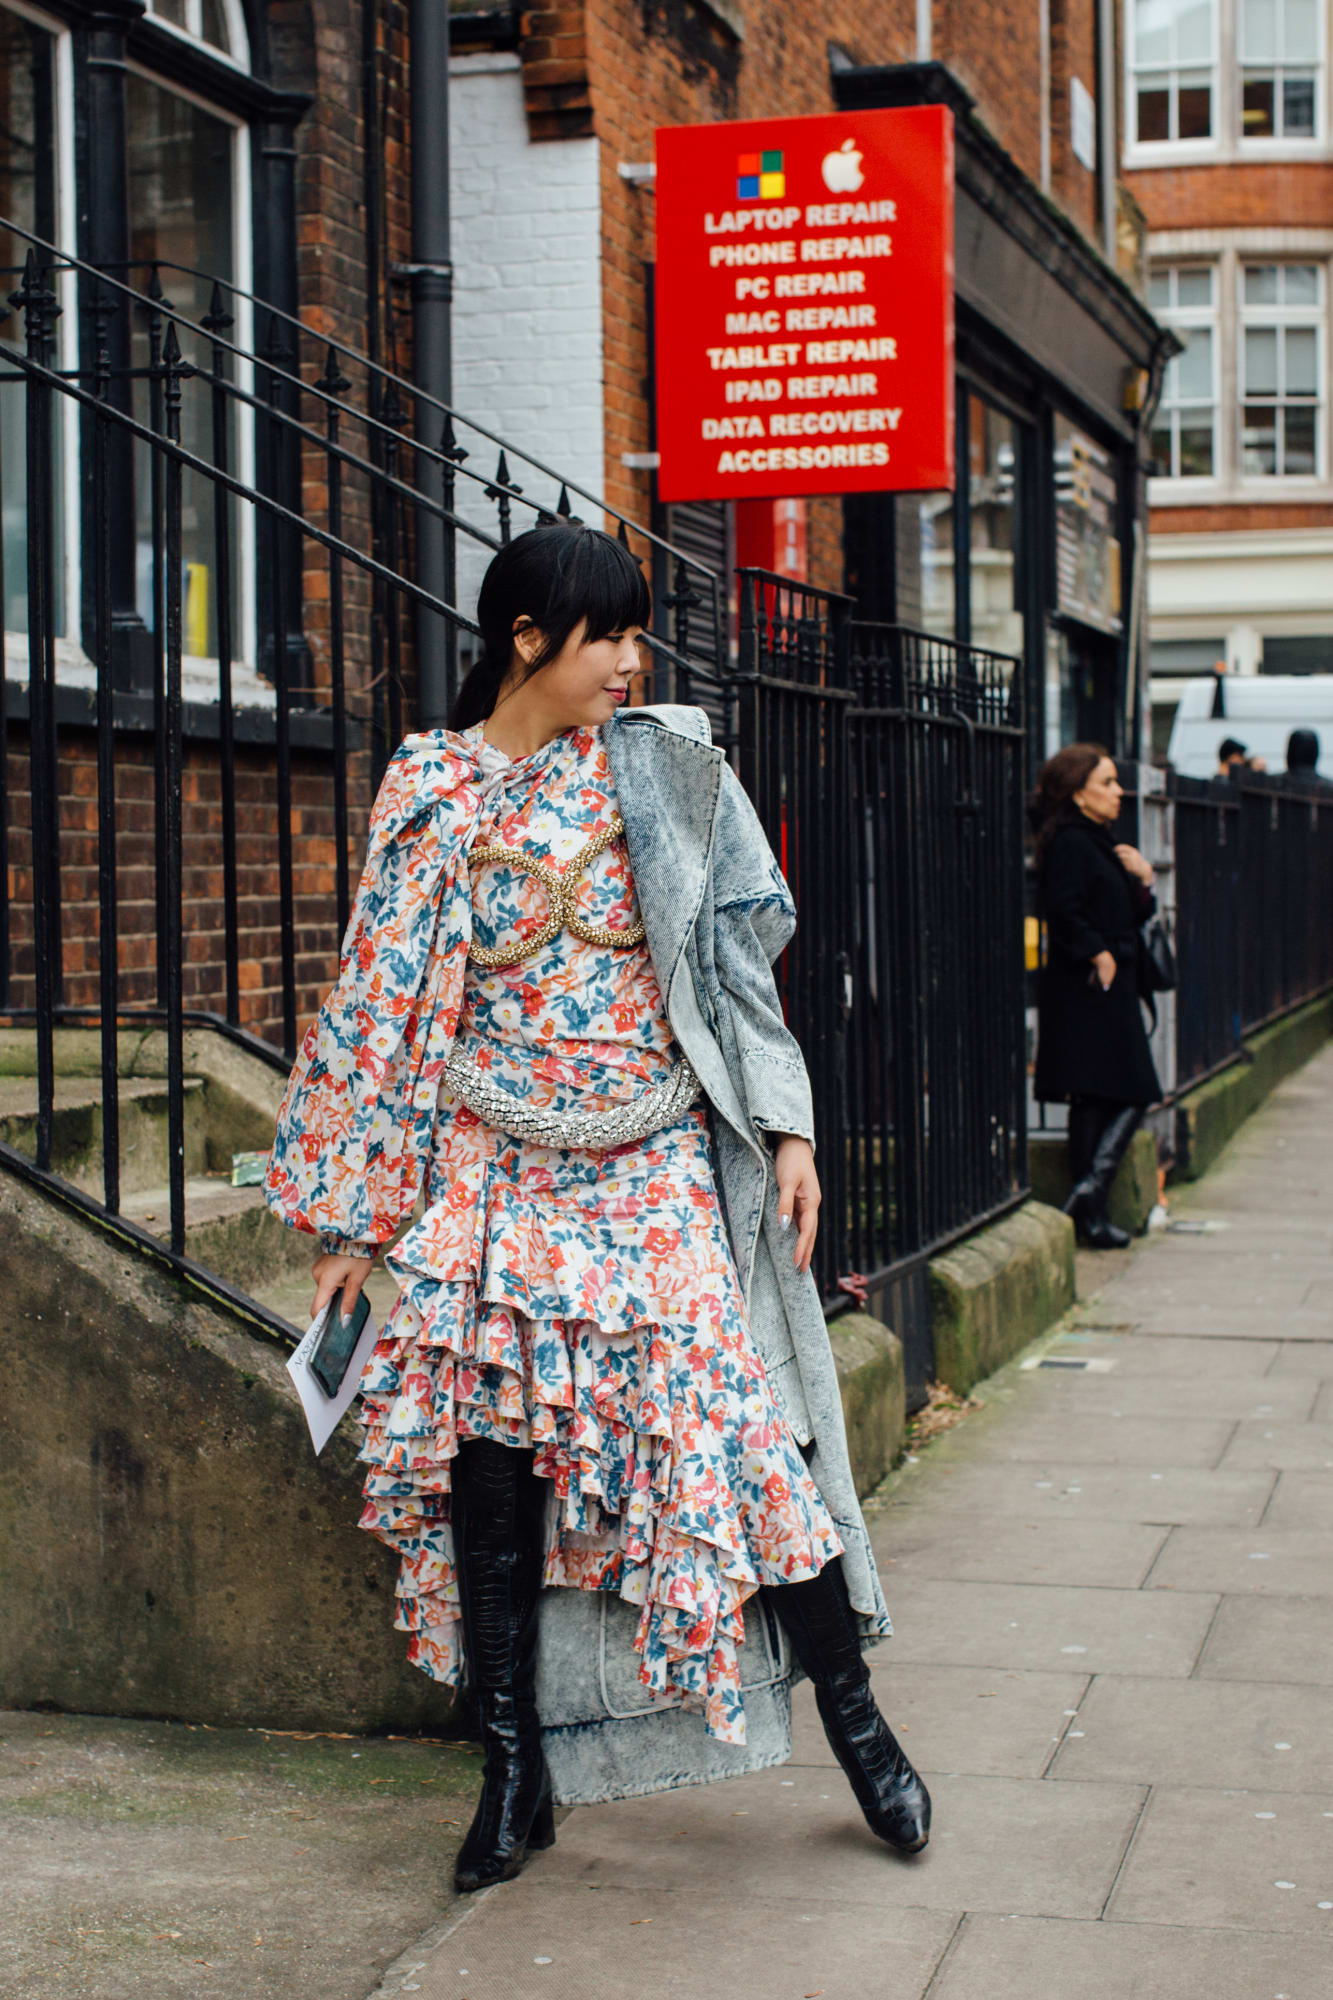 Váy hoa, đầm nhún tưng bừng, sống động trên đường phố London - 3